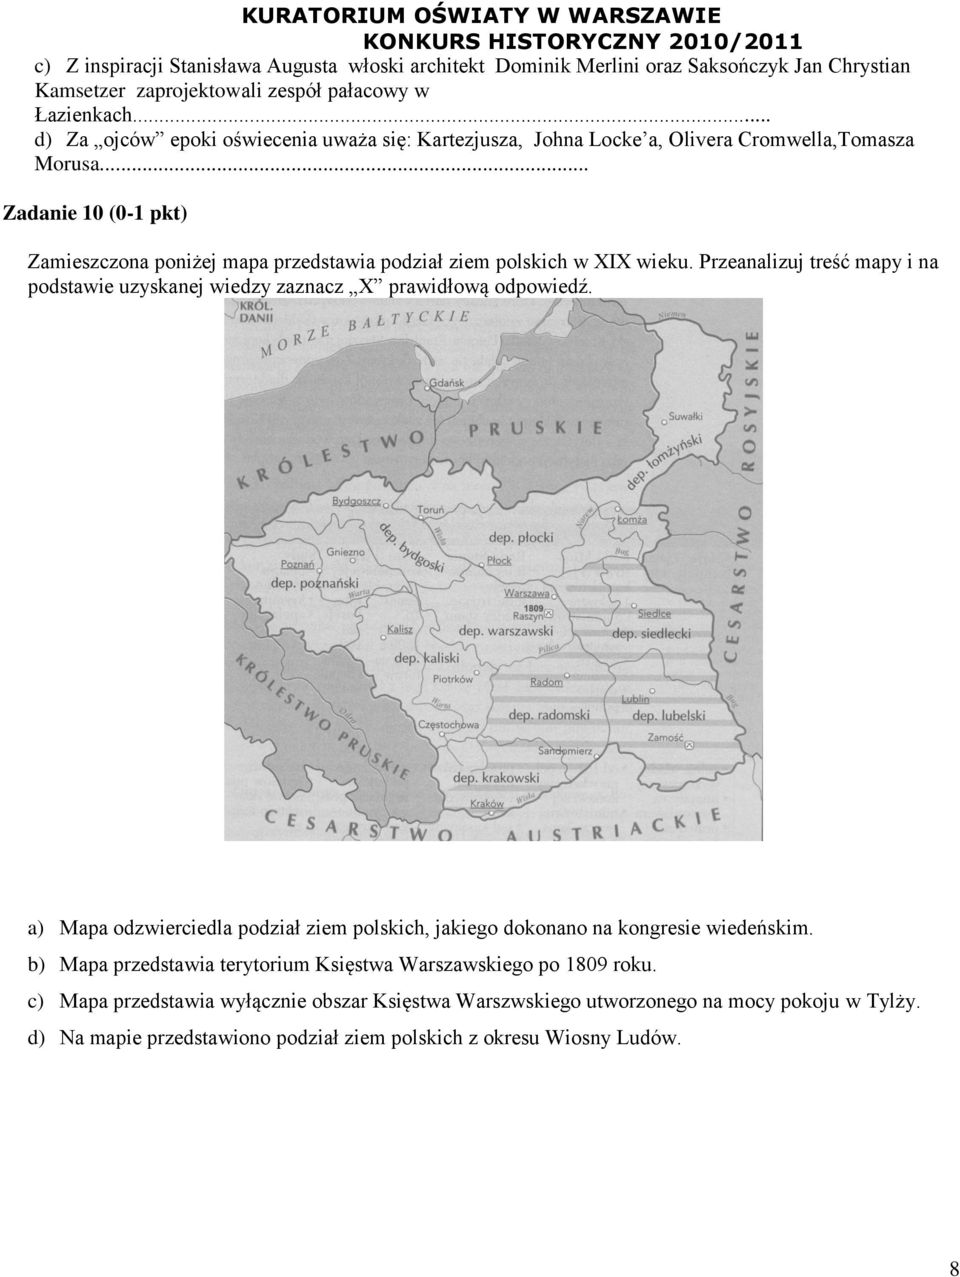 .. Zadanie 10 (0-1 pkt) Zamieszczona poniżej mapa przedstawia podział ziem polskich w XIX wieku. Przeanalizuj treść mapy i na podstawie uzyskanej wiedzy zaznacz X prawidłową odpowiedź.